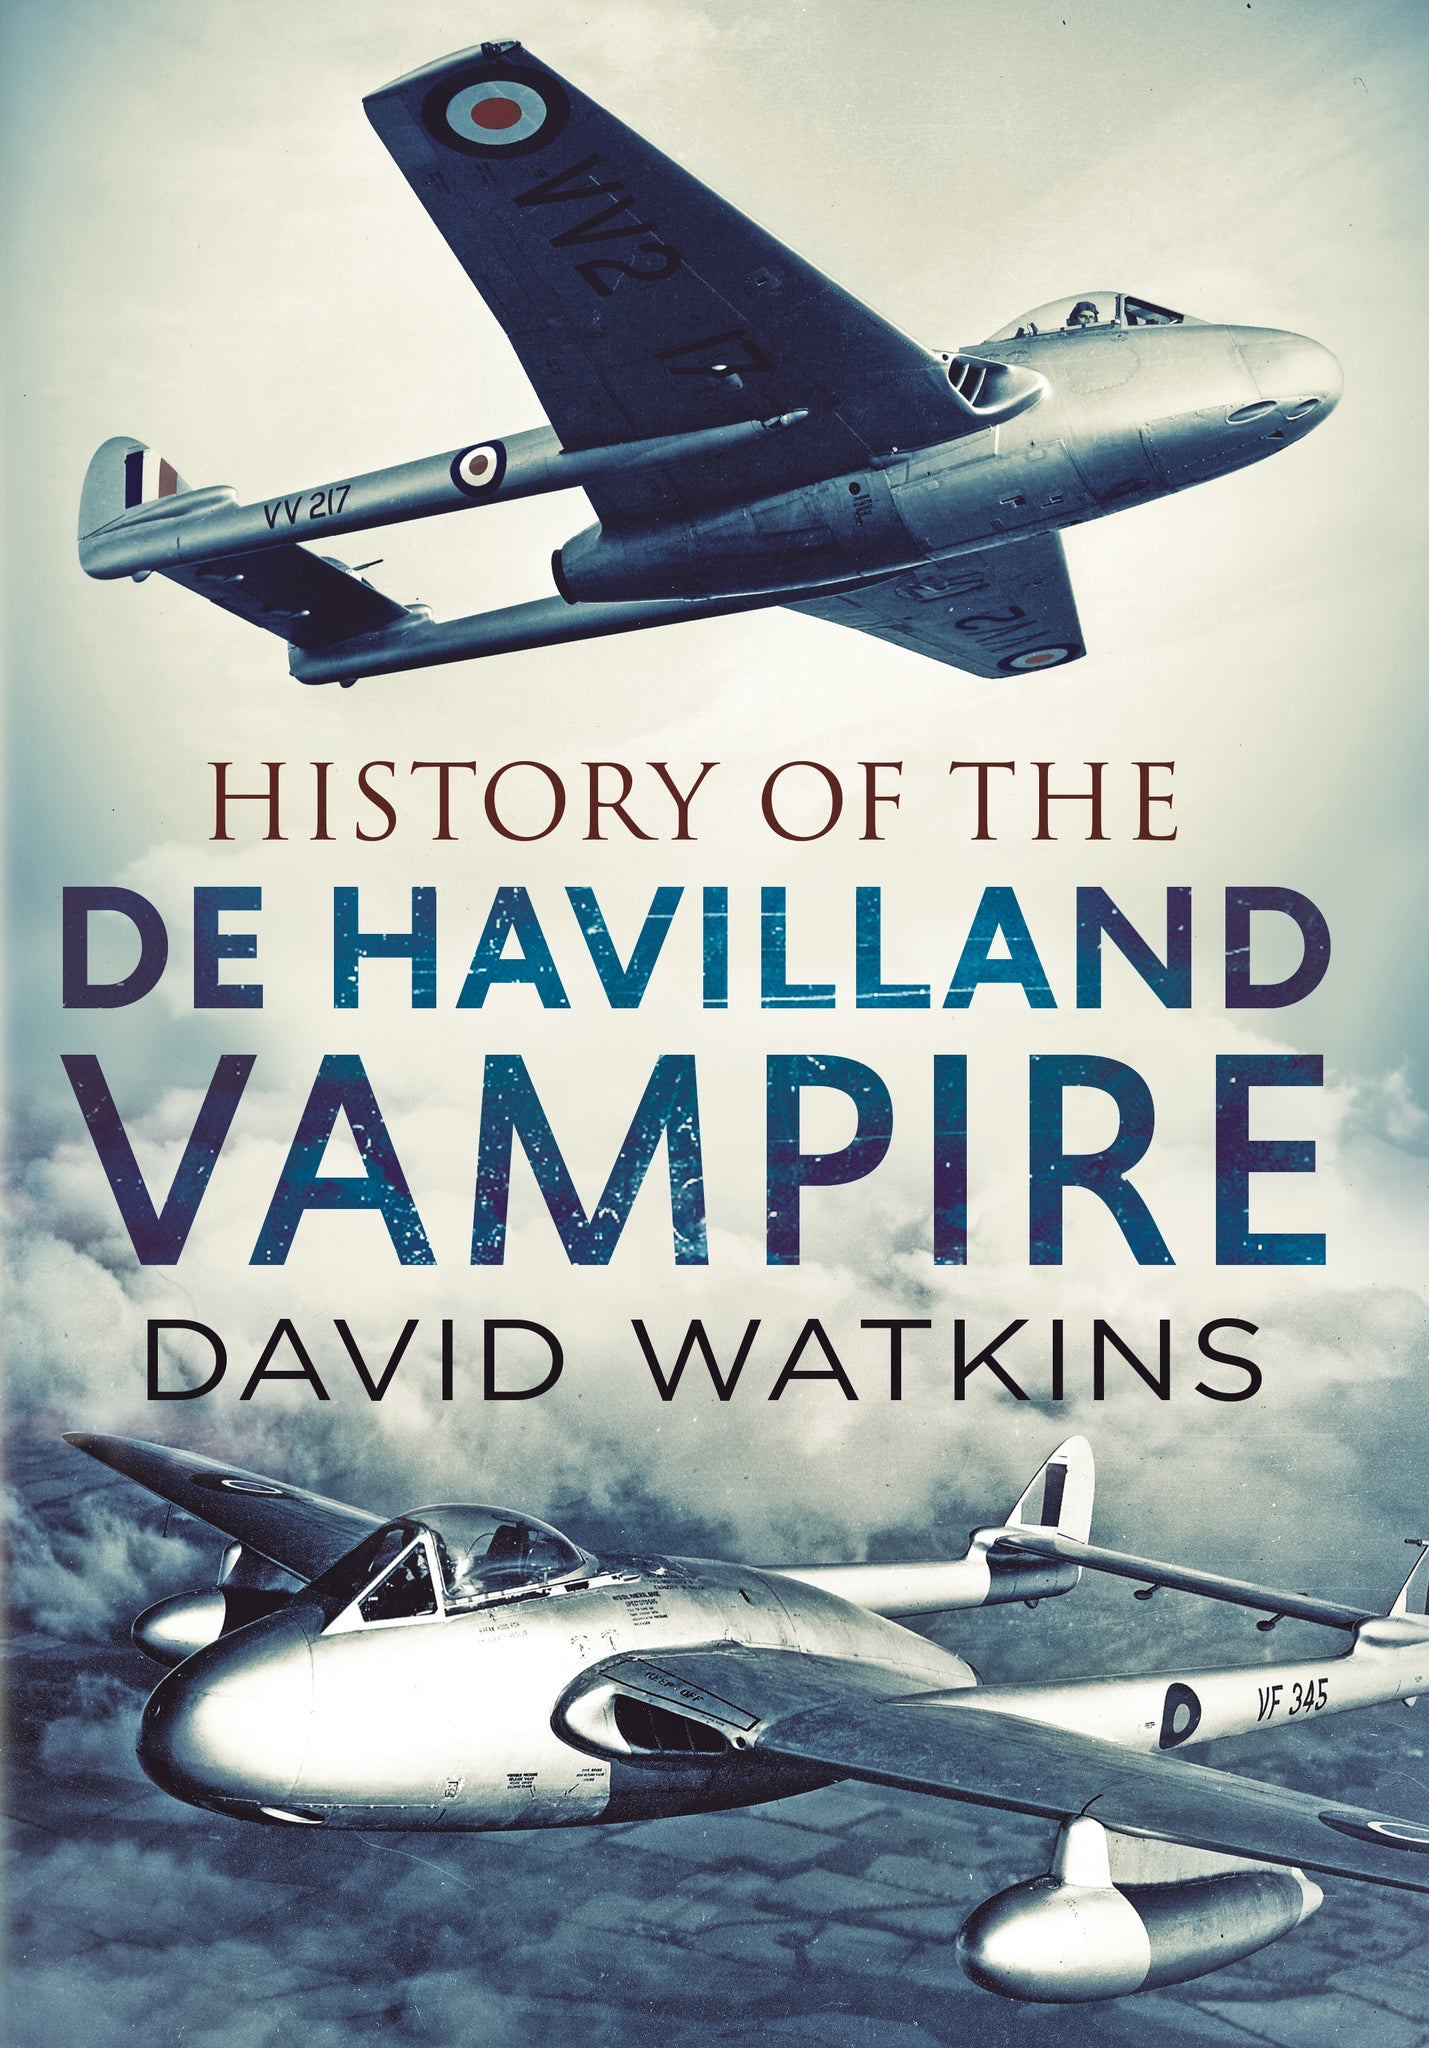 History of the de Havilland Vampire (hardback edition)